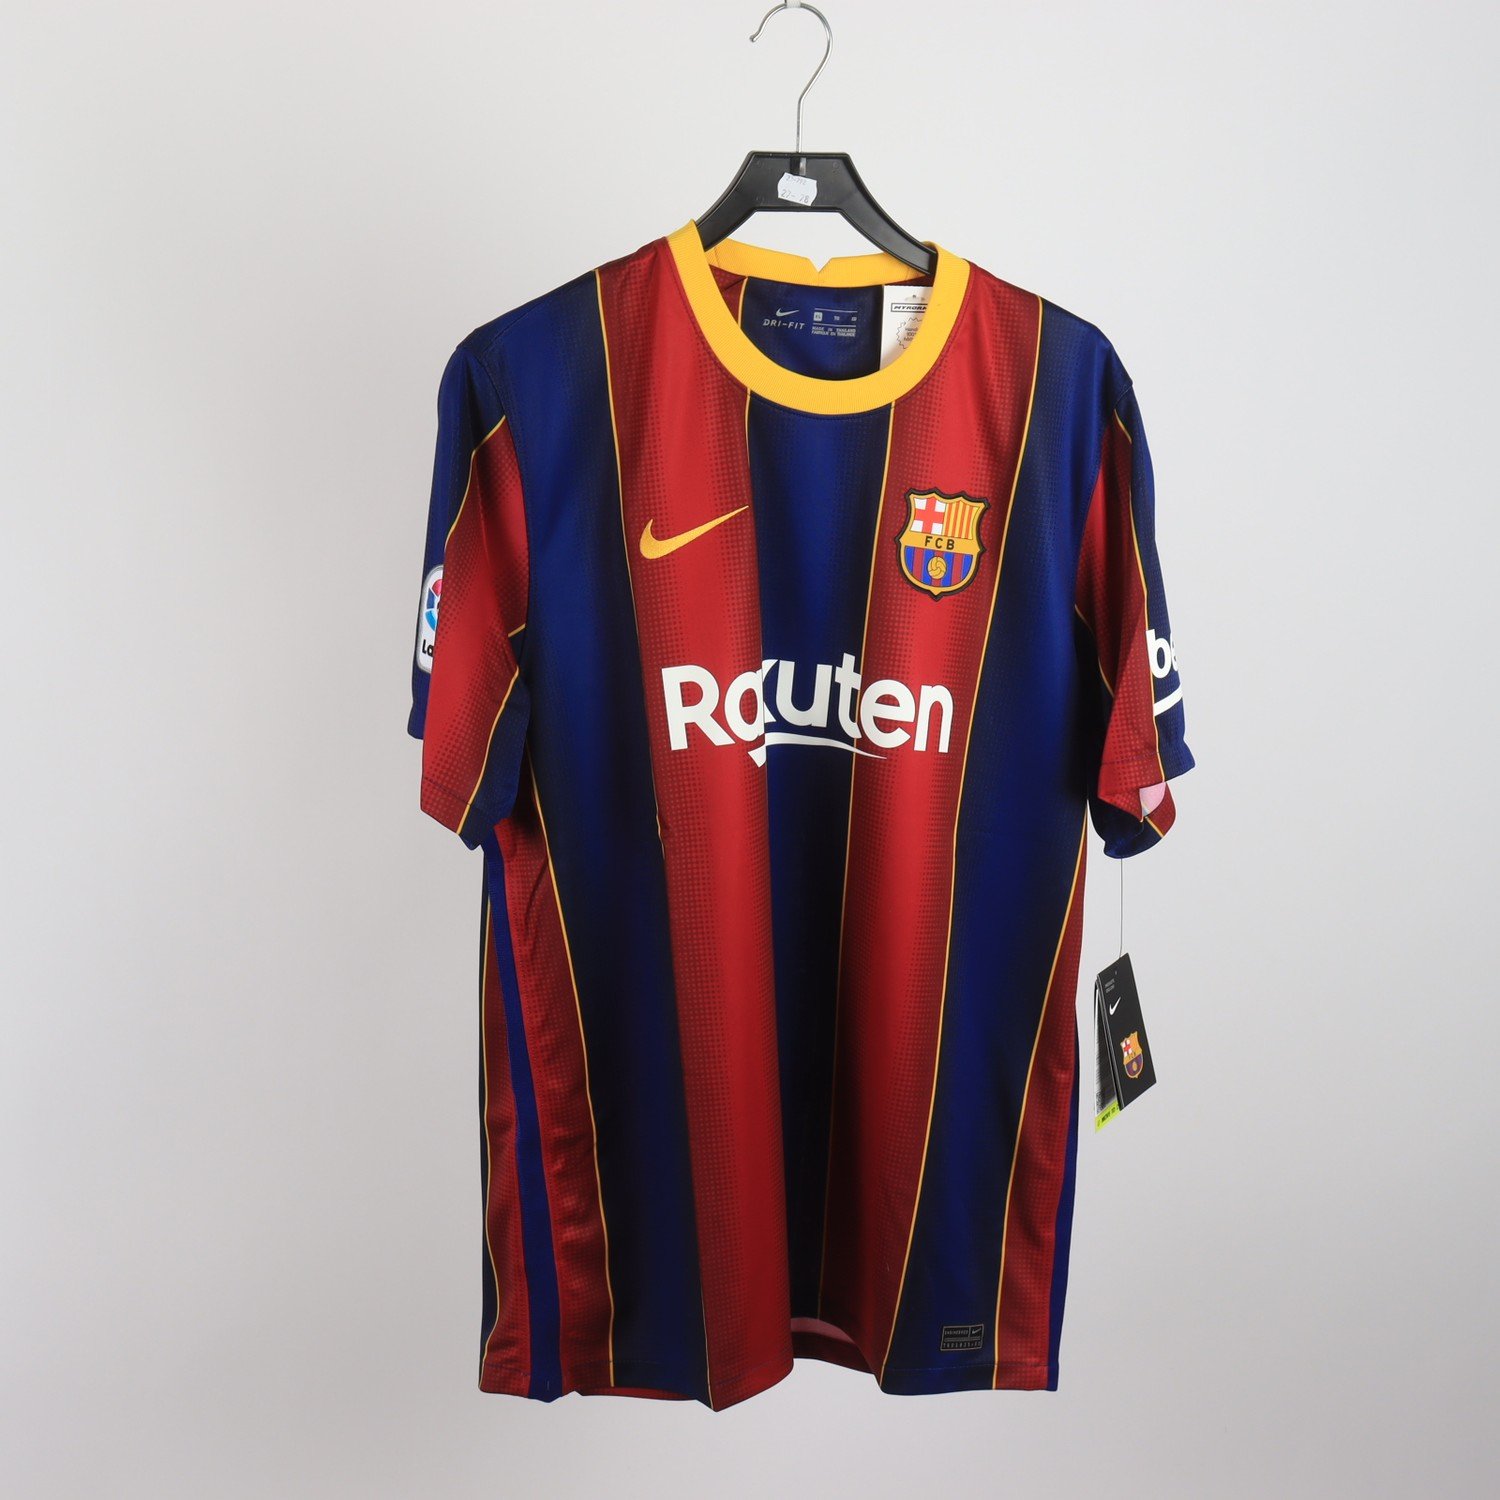 Fotbollströja, Nike, FCB, Barcelona, flerfärgad, stl. XL